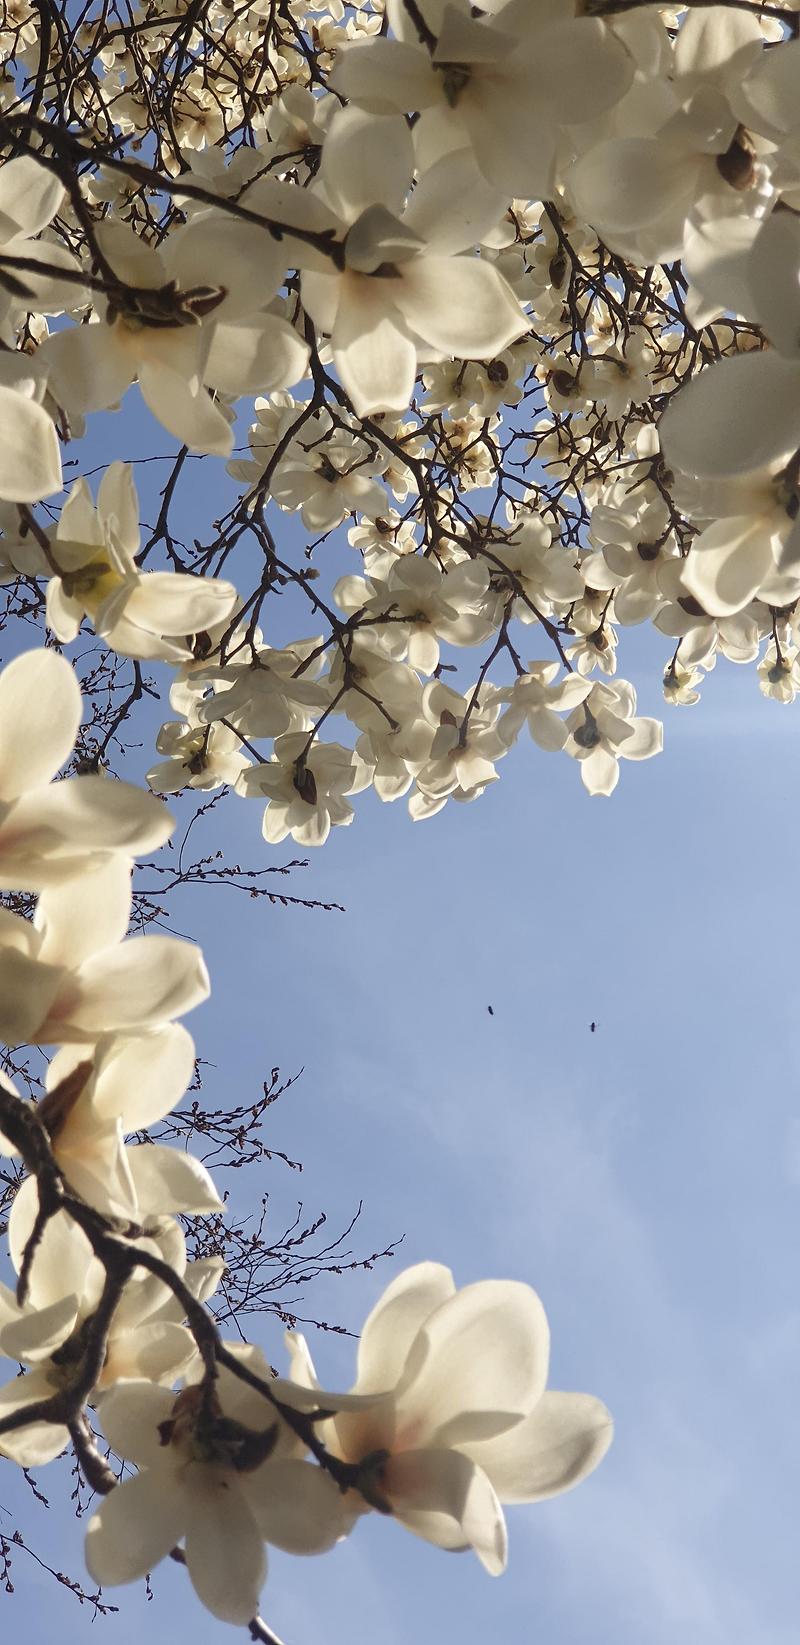 [꽃] 서산 개심사 입구에서 만난 하얀 목련꽃의 고귀함